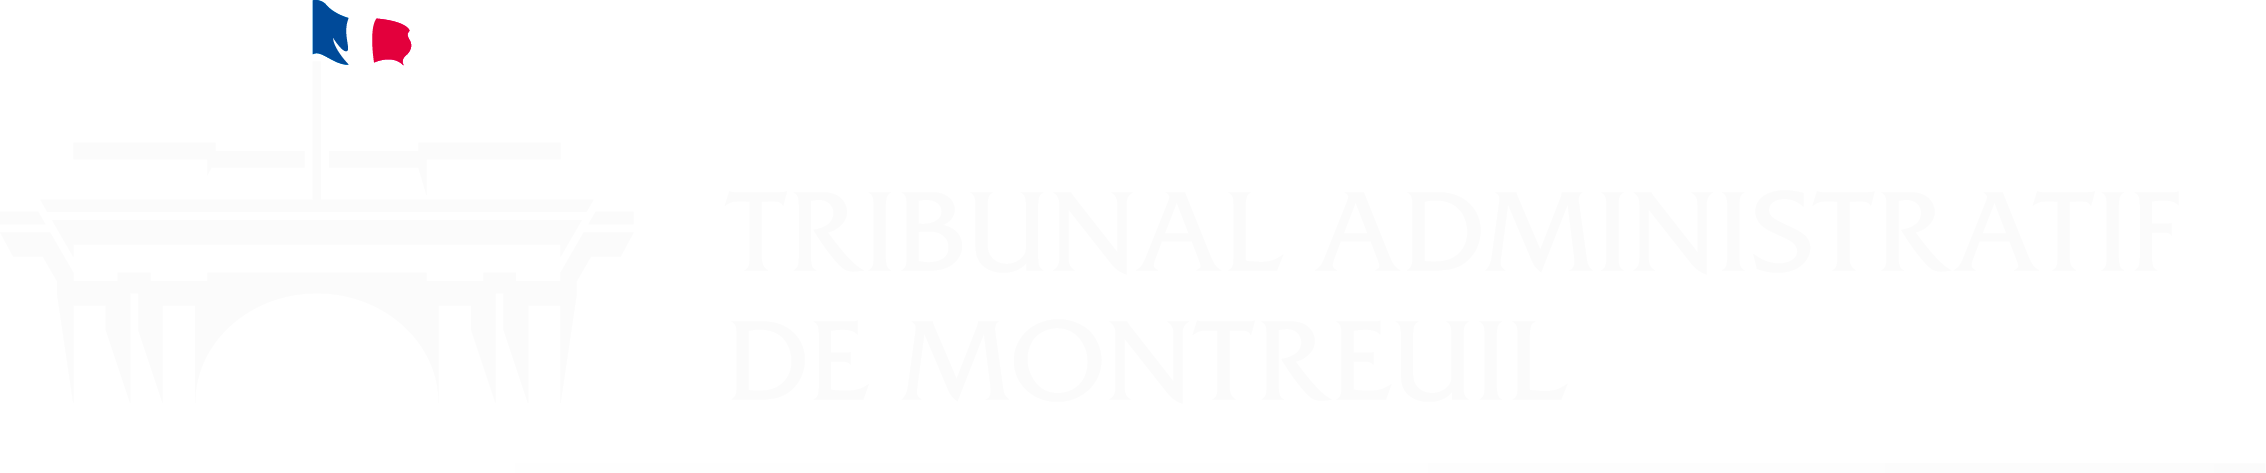 Tribunal administratif de Montreuil - Retour à l'accueil